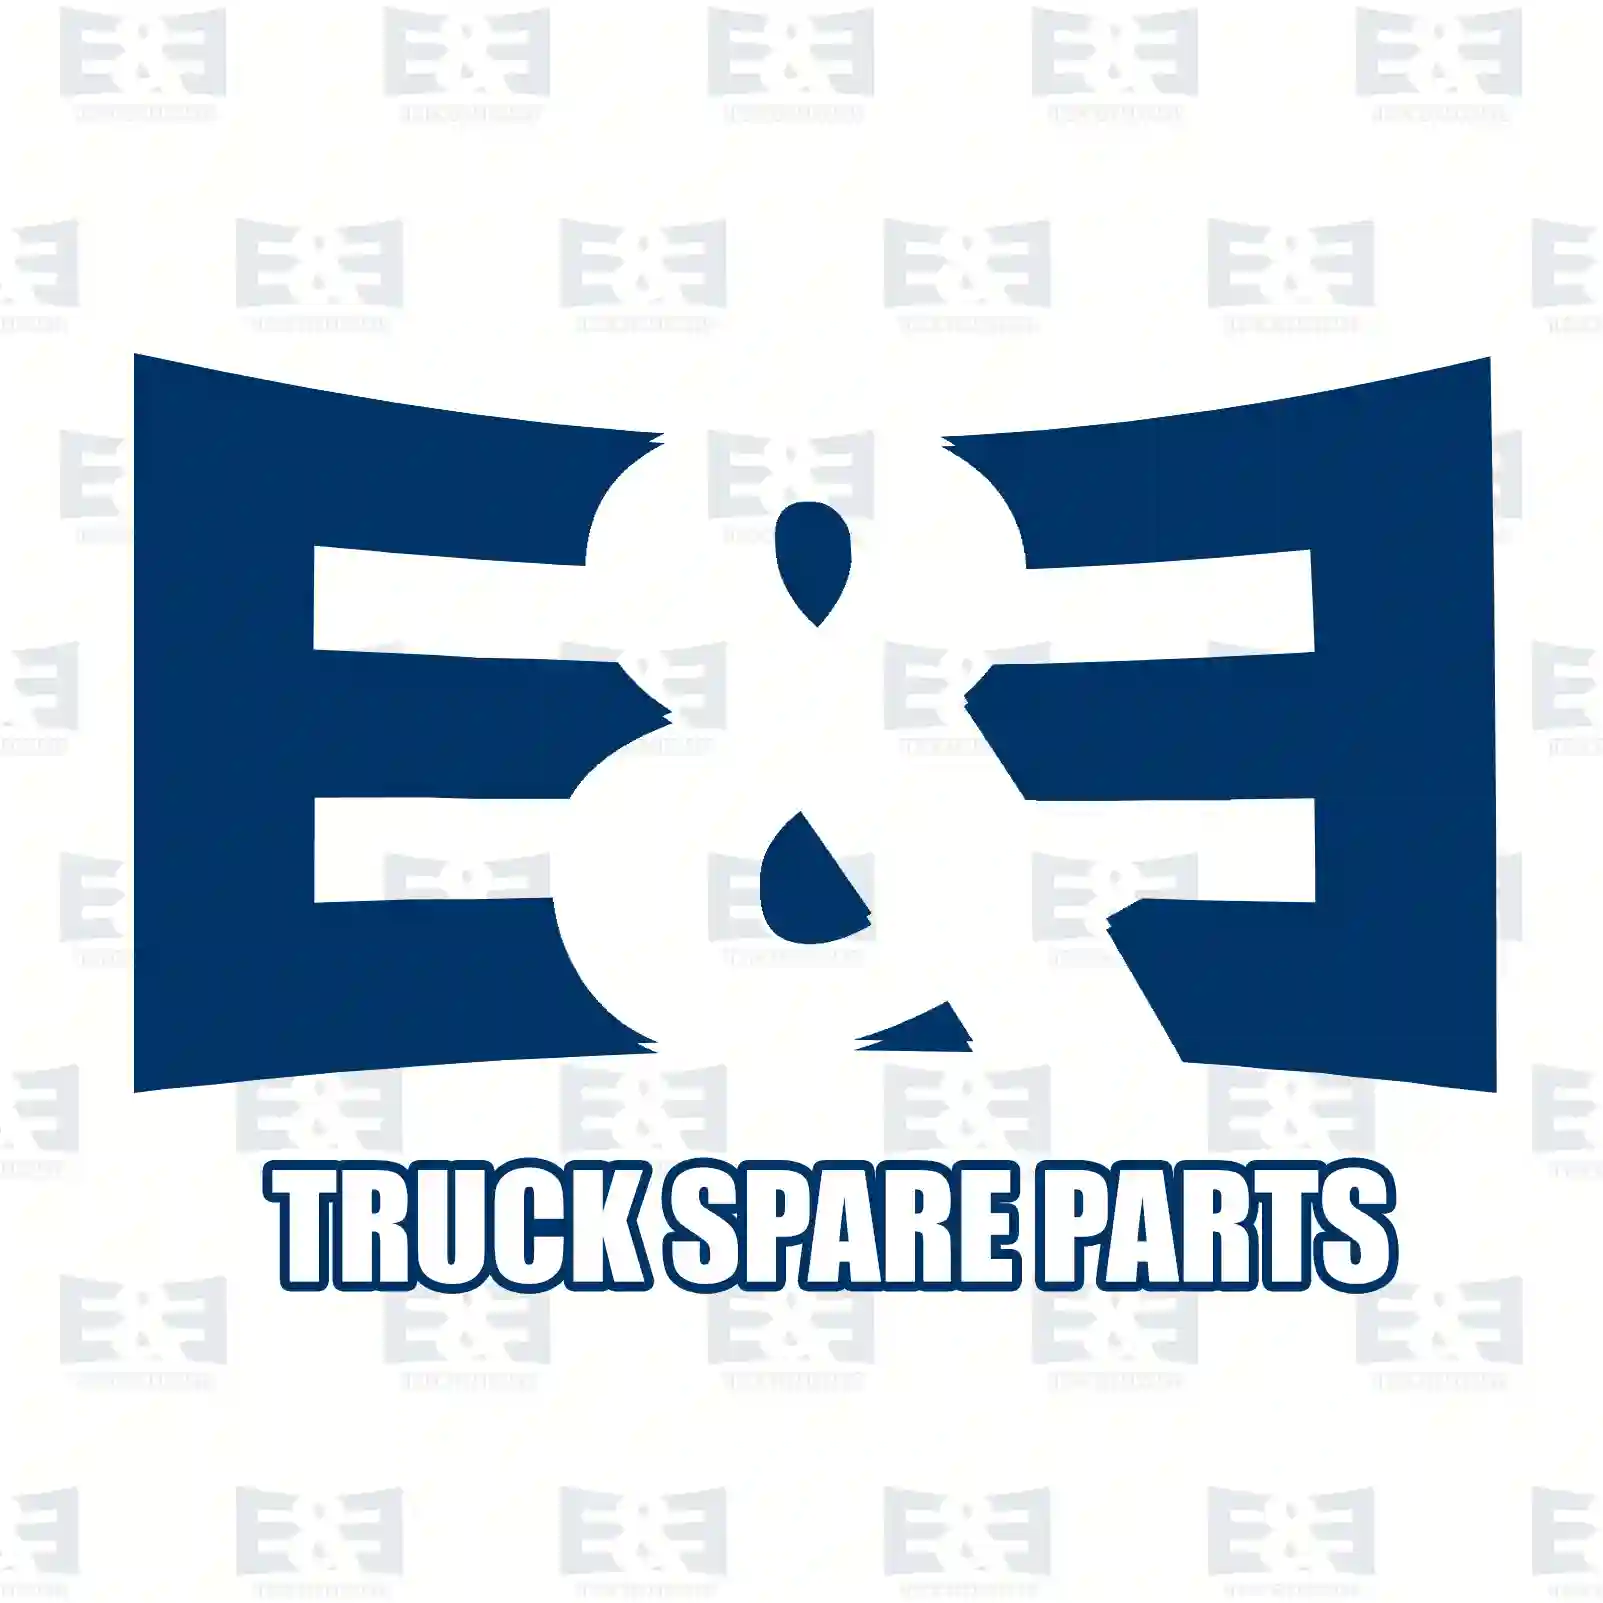 Repair kit, clutch cylinder, 2E2288556, 2902612, 00029046 ||  2E2288556 E&E Truck Spare Parts | Truck Spare Parts, Auotomotive Spare Parts Repair kit, clutch cylinder, 2E2288556, 2902612, 00029046 ||  2E2288556 E&E Truck Spare Parts | Truck Spare Parts, Auotomotive Spare Parts